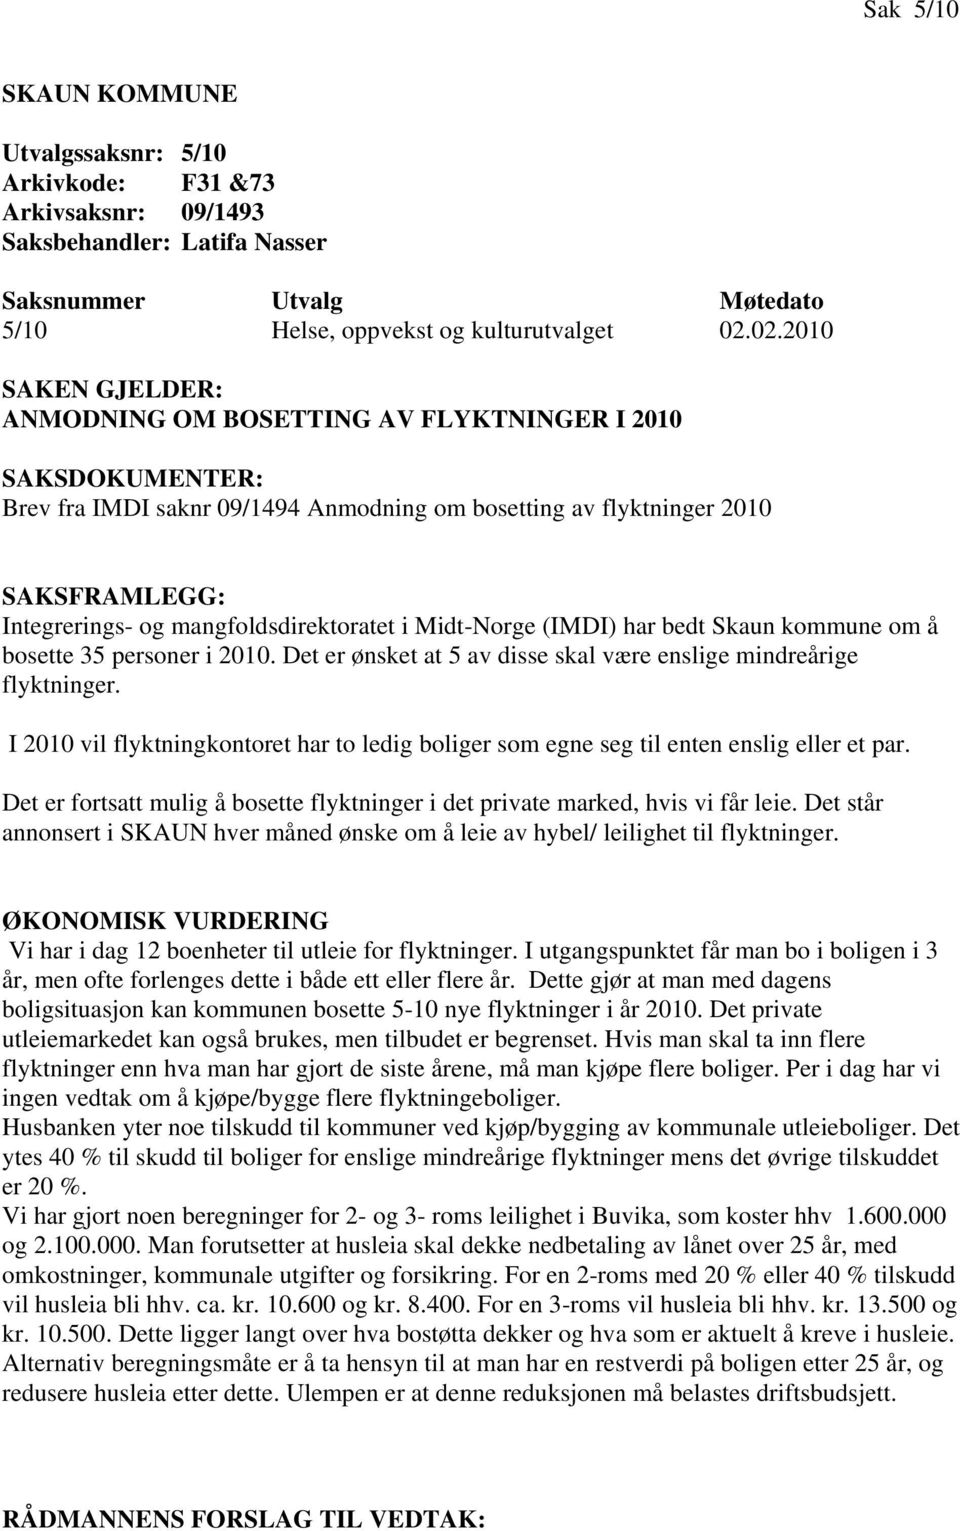 Midt-Norge (IMDI) har bedt Skaun kommune om å bosette 35 personer i 2010. Det er ønsket at 5 av disse skal være enslige mindreårige flyktninger.